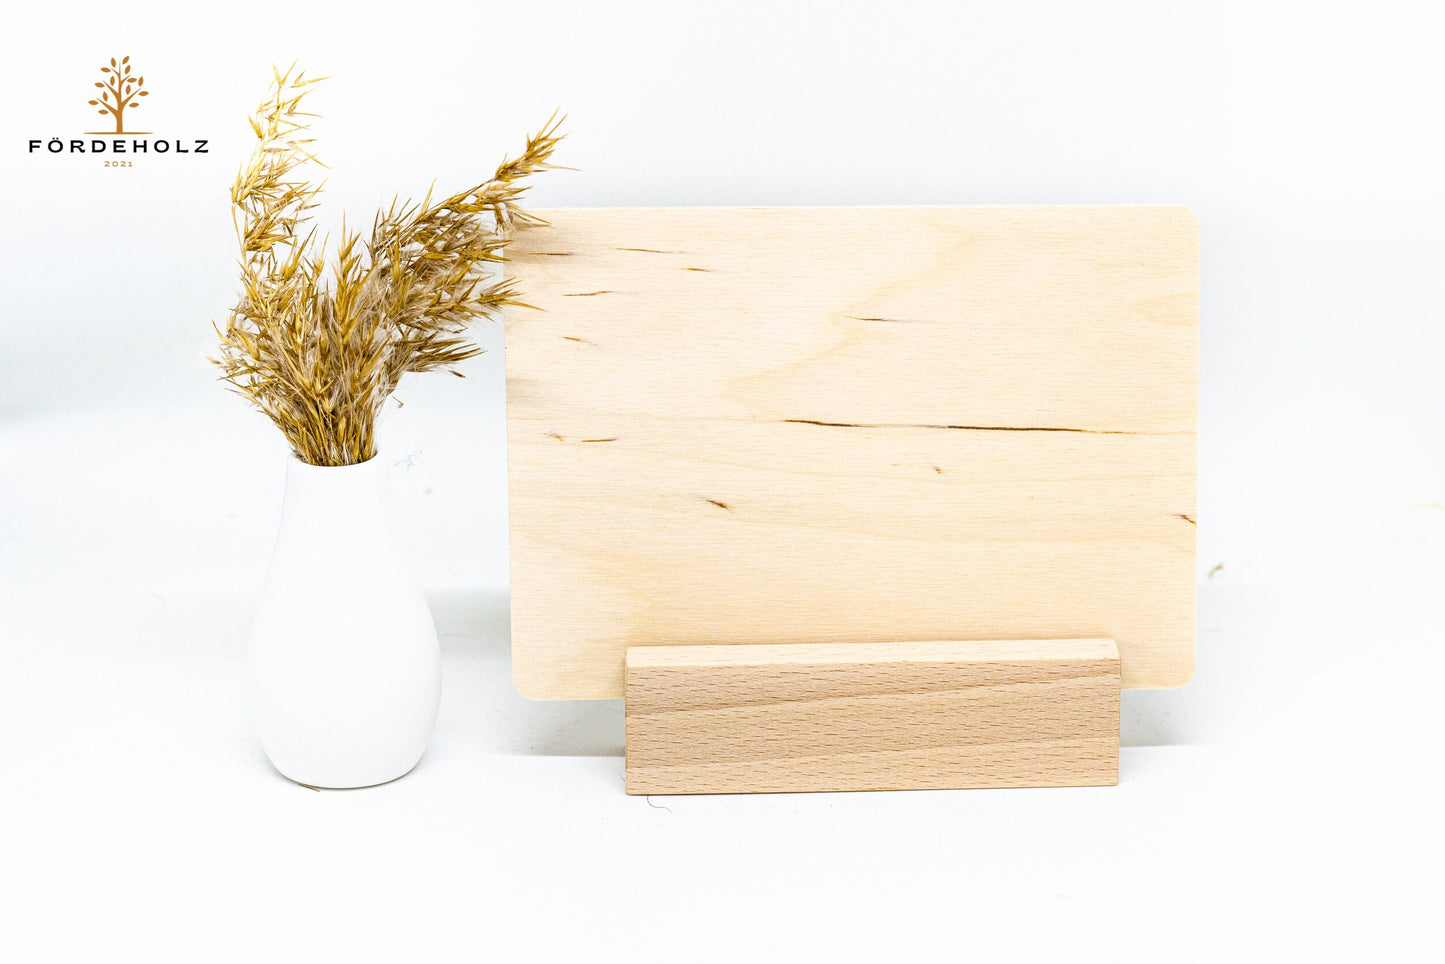 Gutschein aus Holz - Holzgutschein - Holzpostkarte - 14x10 cm - Geschenkgutschein - individuell - gravierbar - personalisierbar